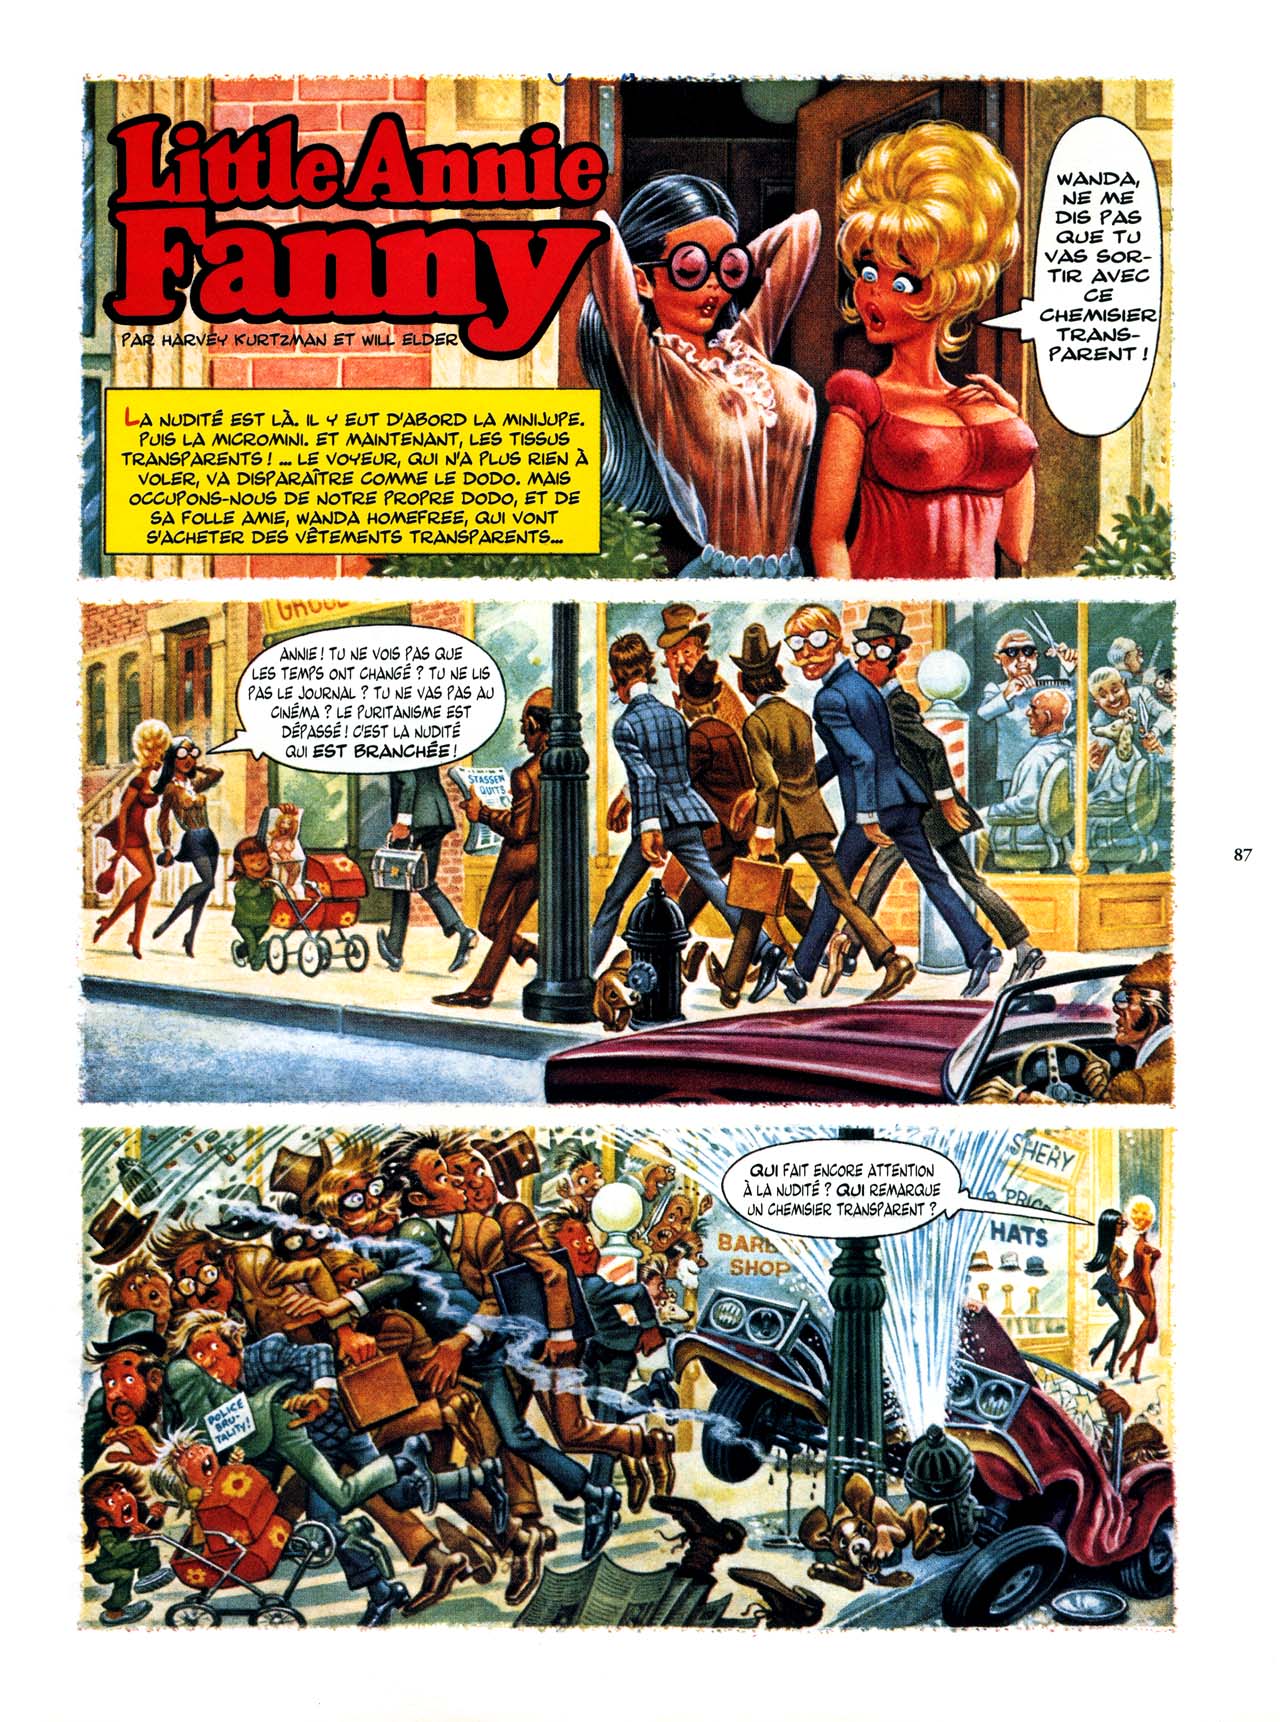 Playboys Little Annie Fanny Vol. 2 - 1965-1970 numero d'image 87